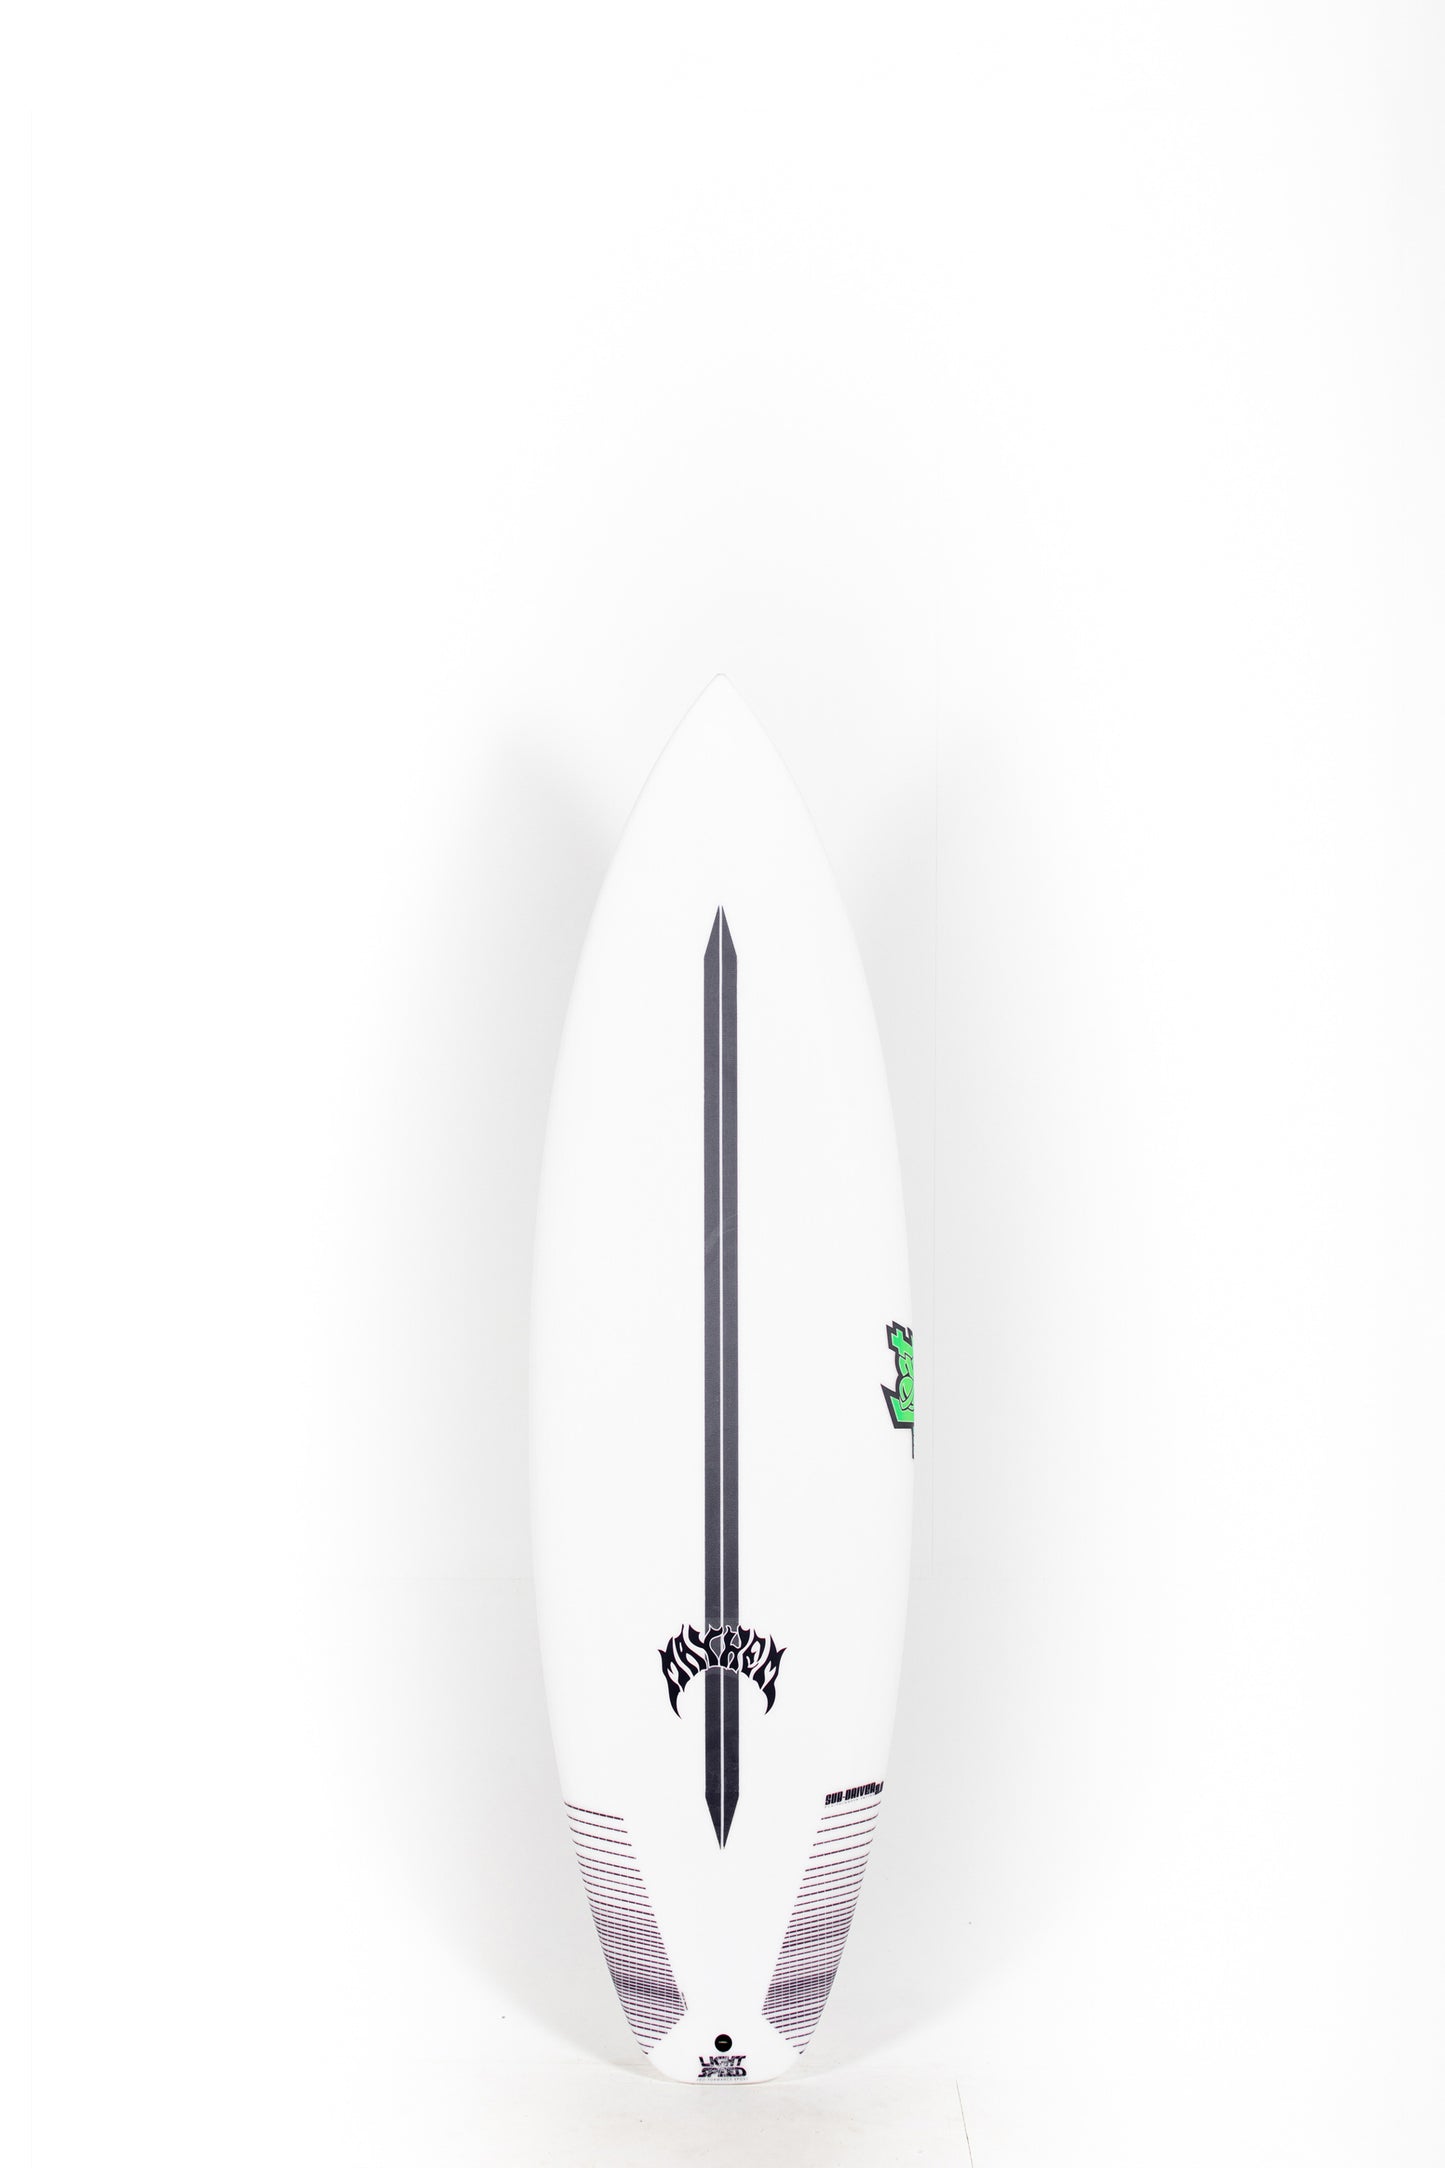 Pukas Surf Shop - Lost Surfboard - SUB DRIVER 2.0 by Matt Biolos - Light Speed - 6’2” x 20,55 x 2,6 - 35L